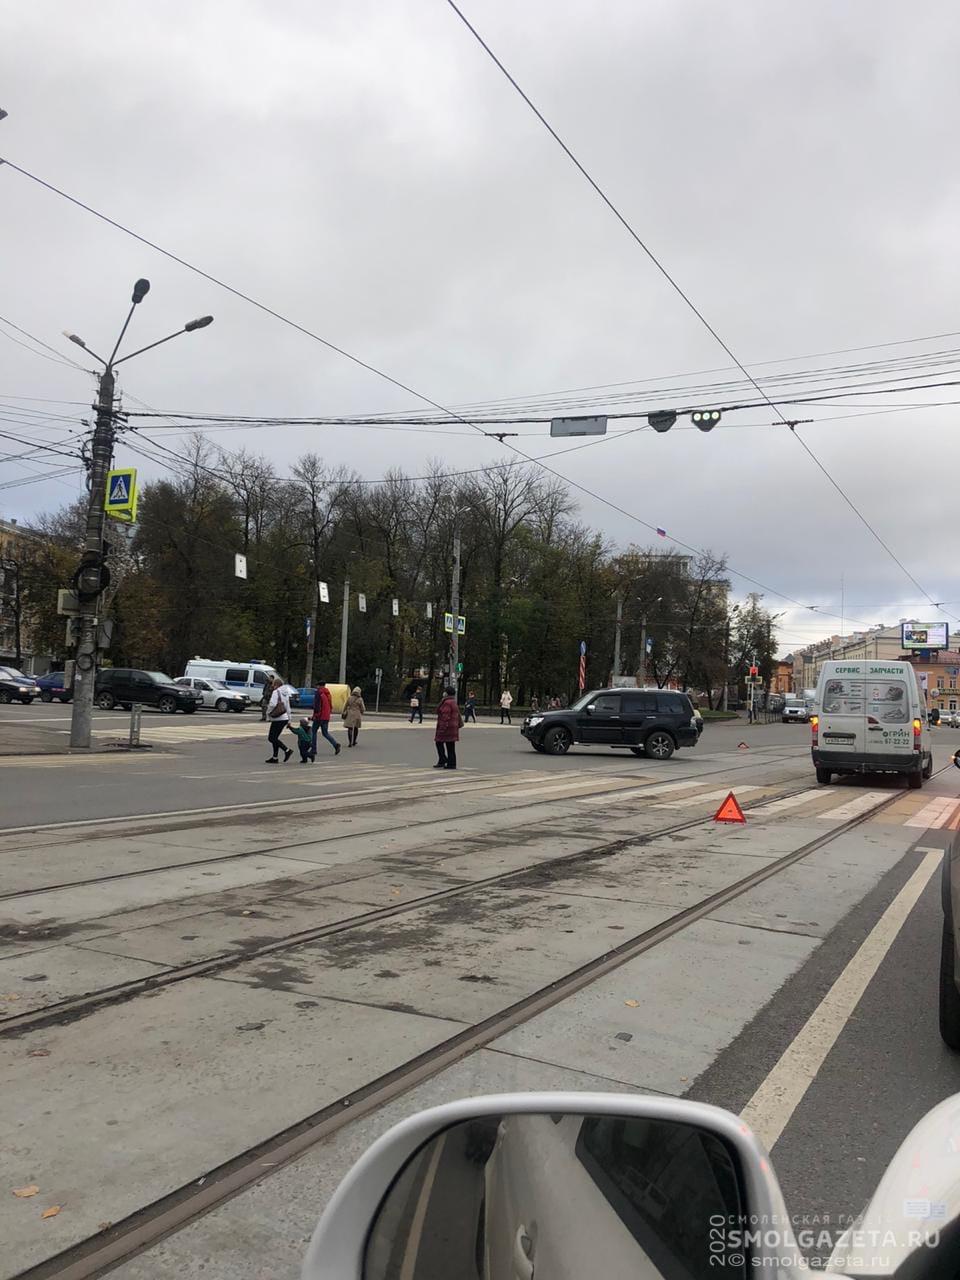 В центре Смоленска произошло ДТП